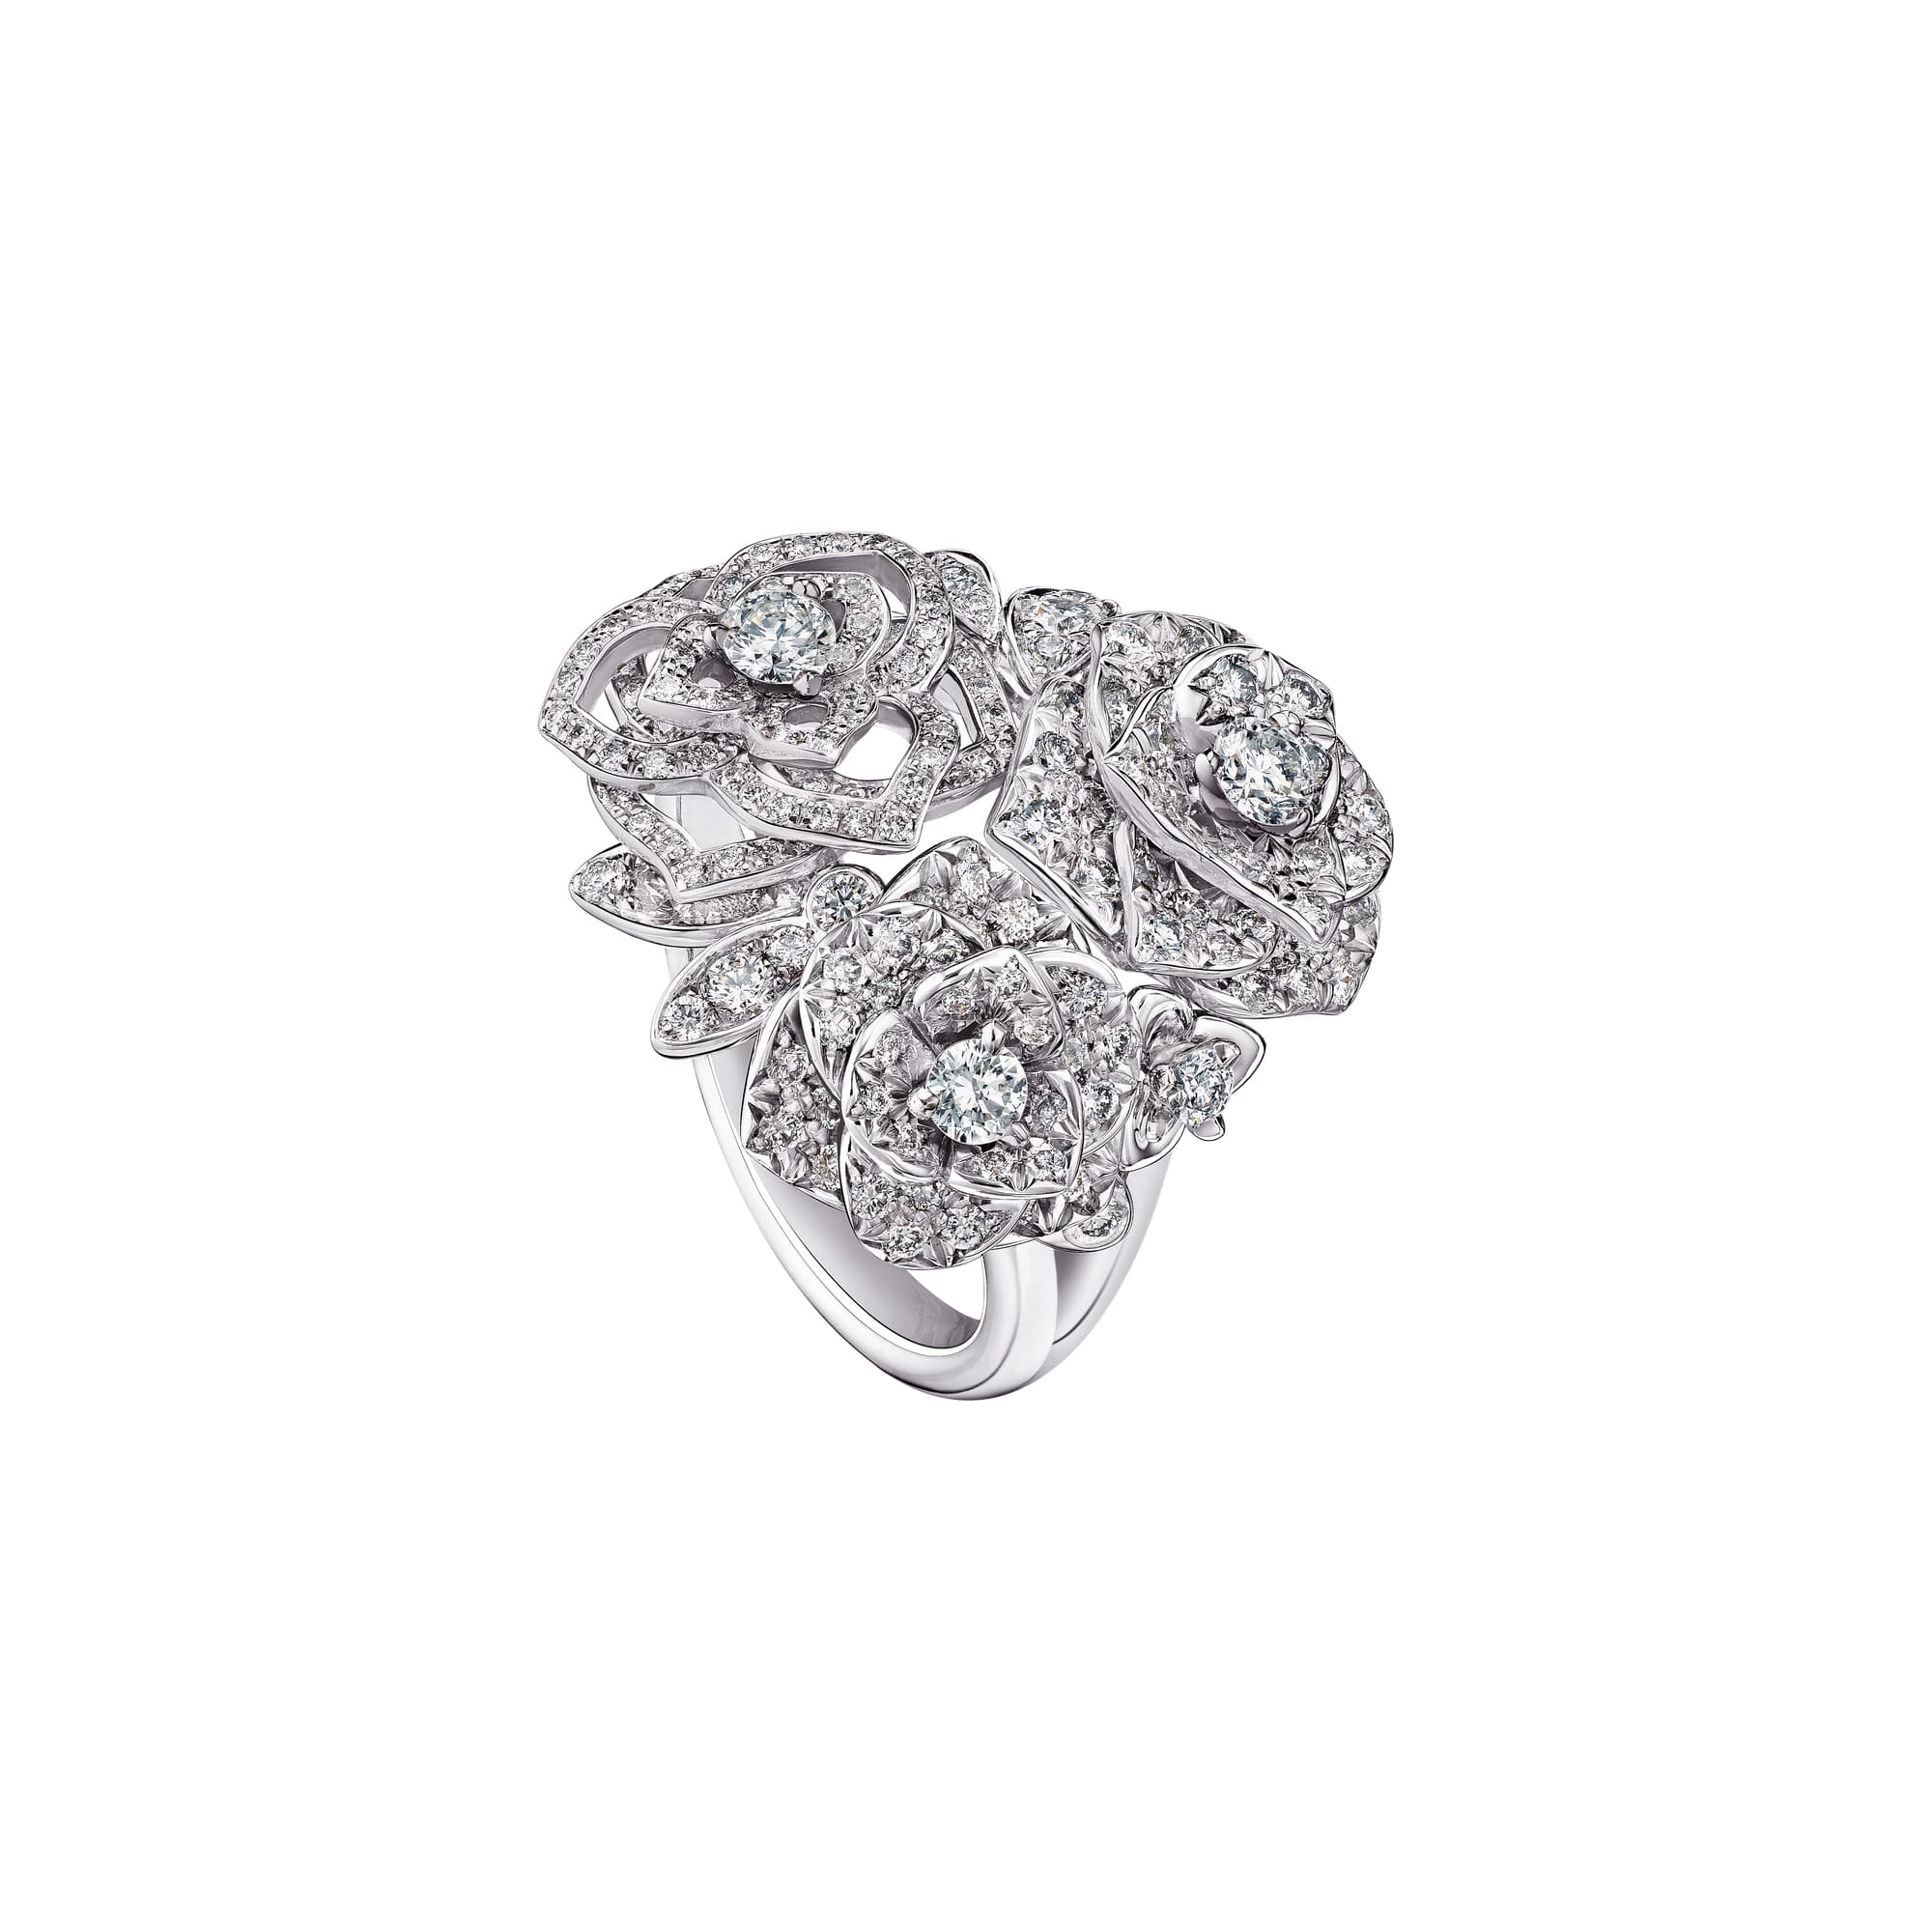 White gold Diamond Ring G34UT900 - Piaget Luxury Jewelry Online